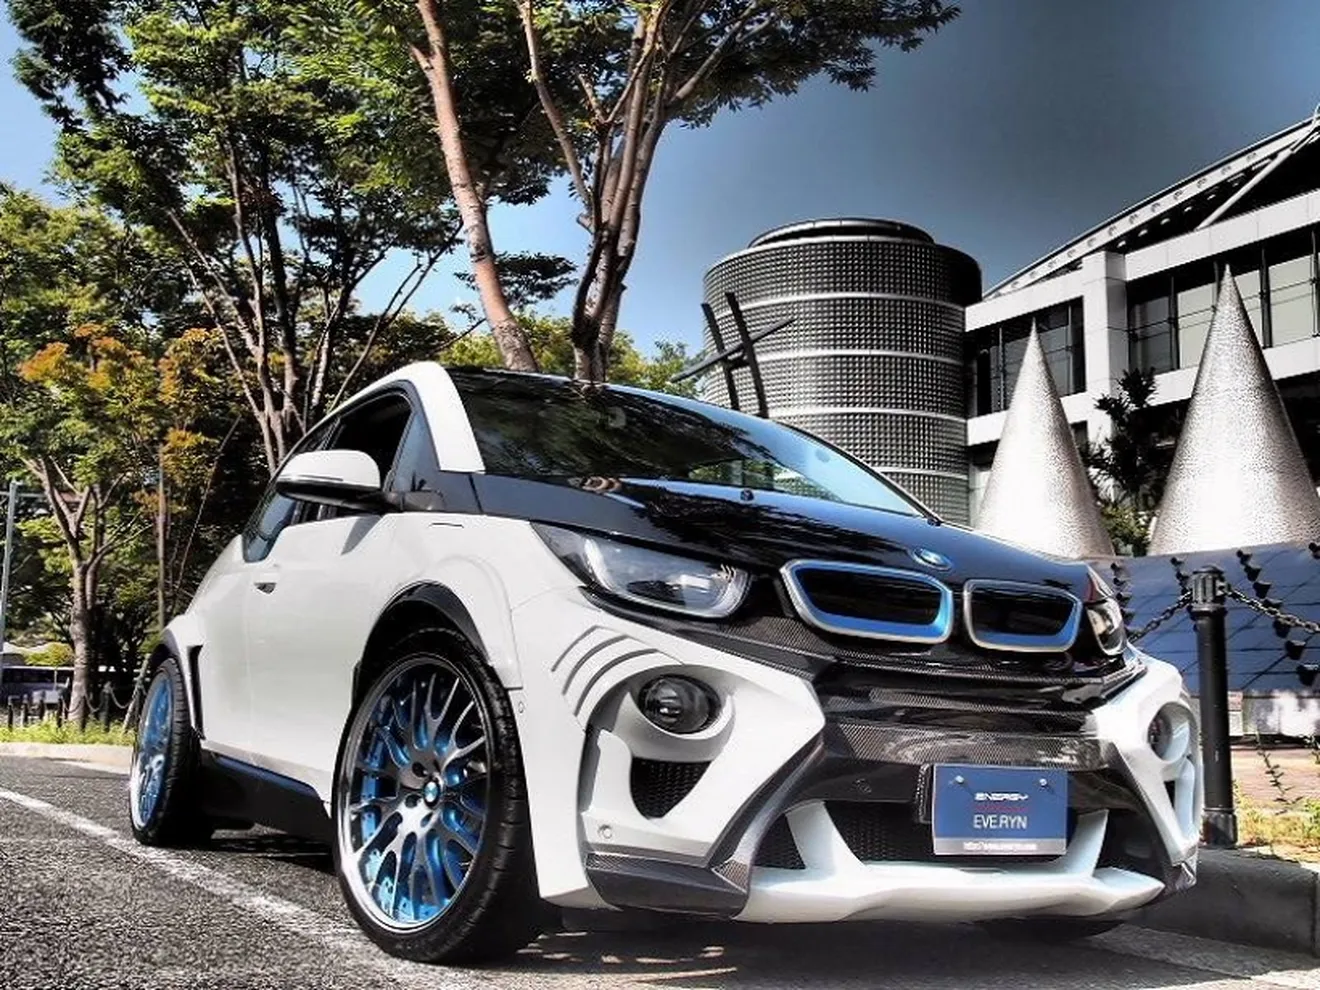 El BMW i3 más radical, por el preparador japonés Eve Ryn